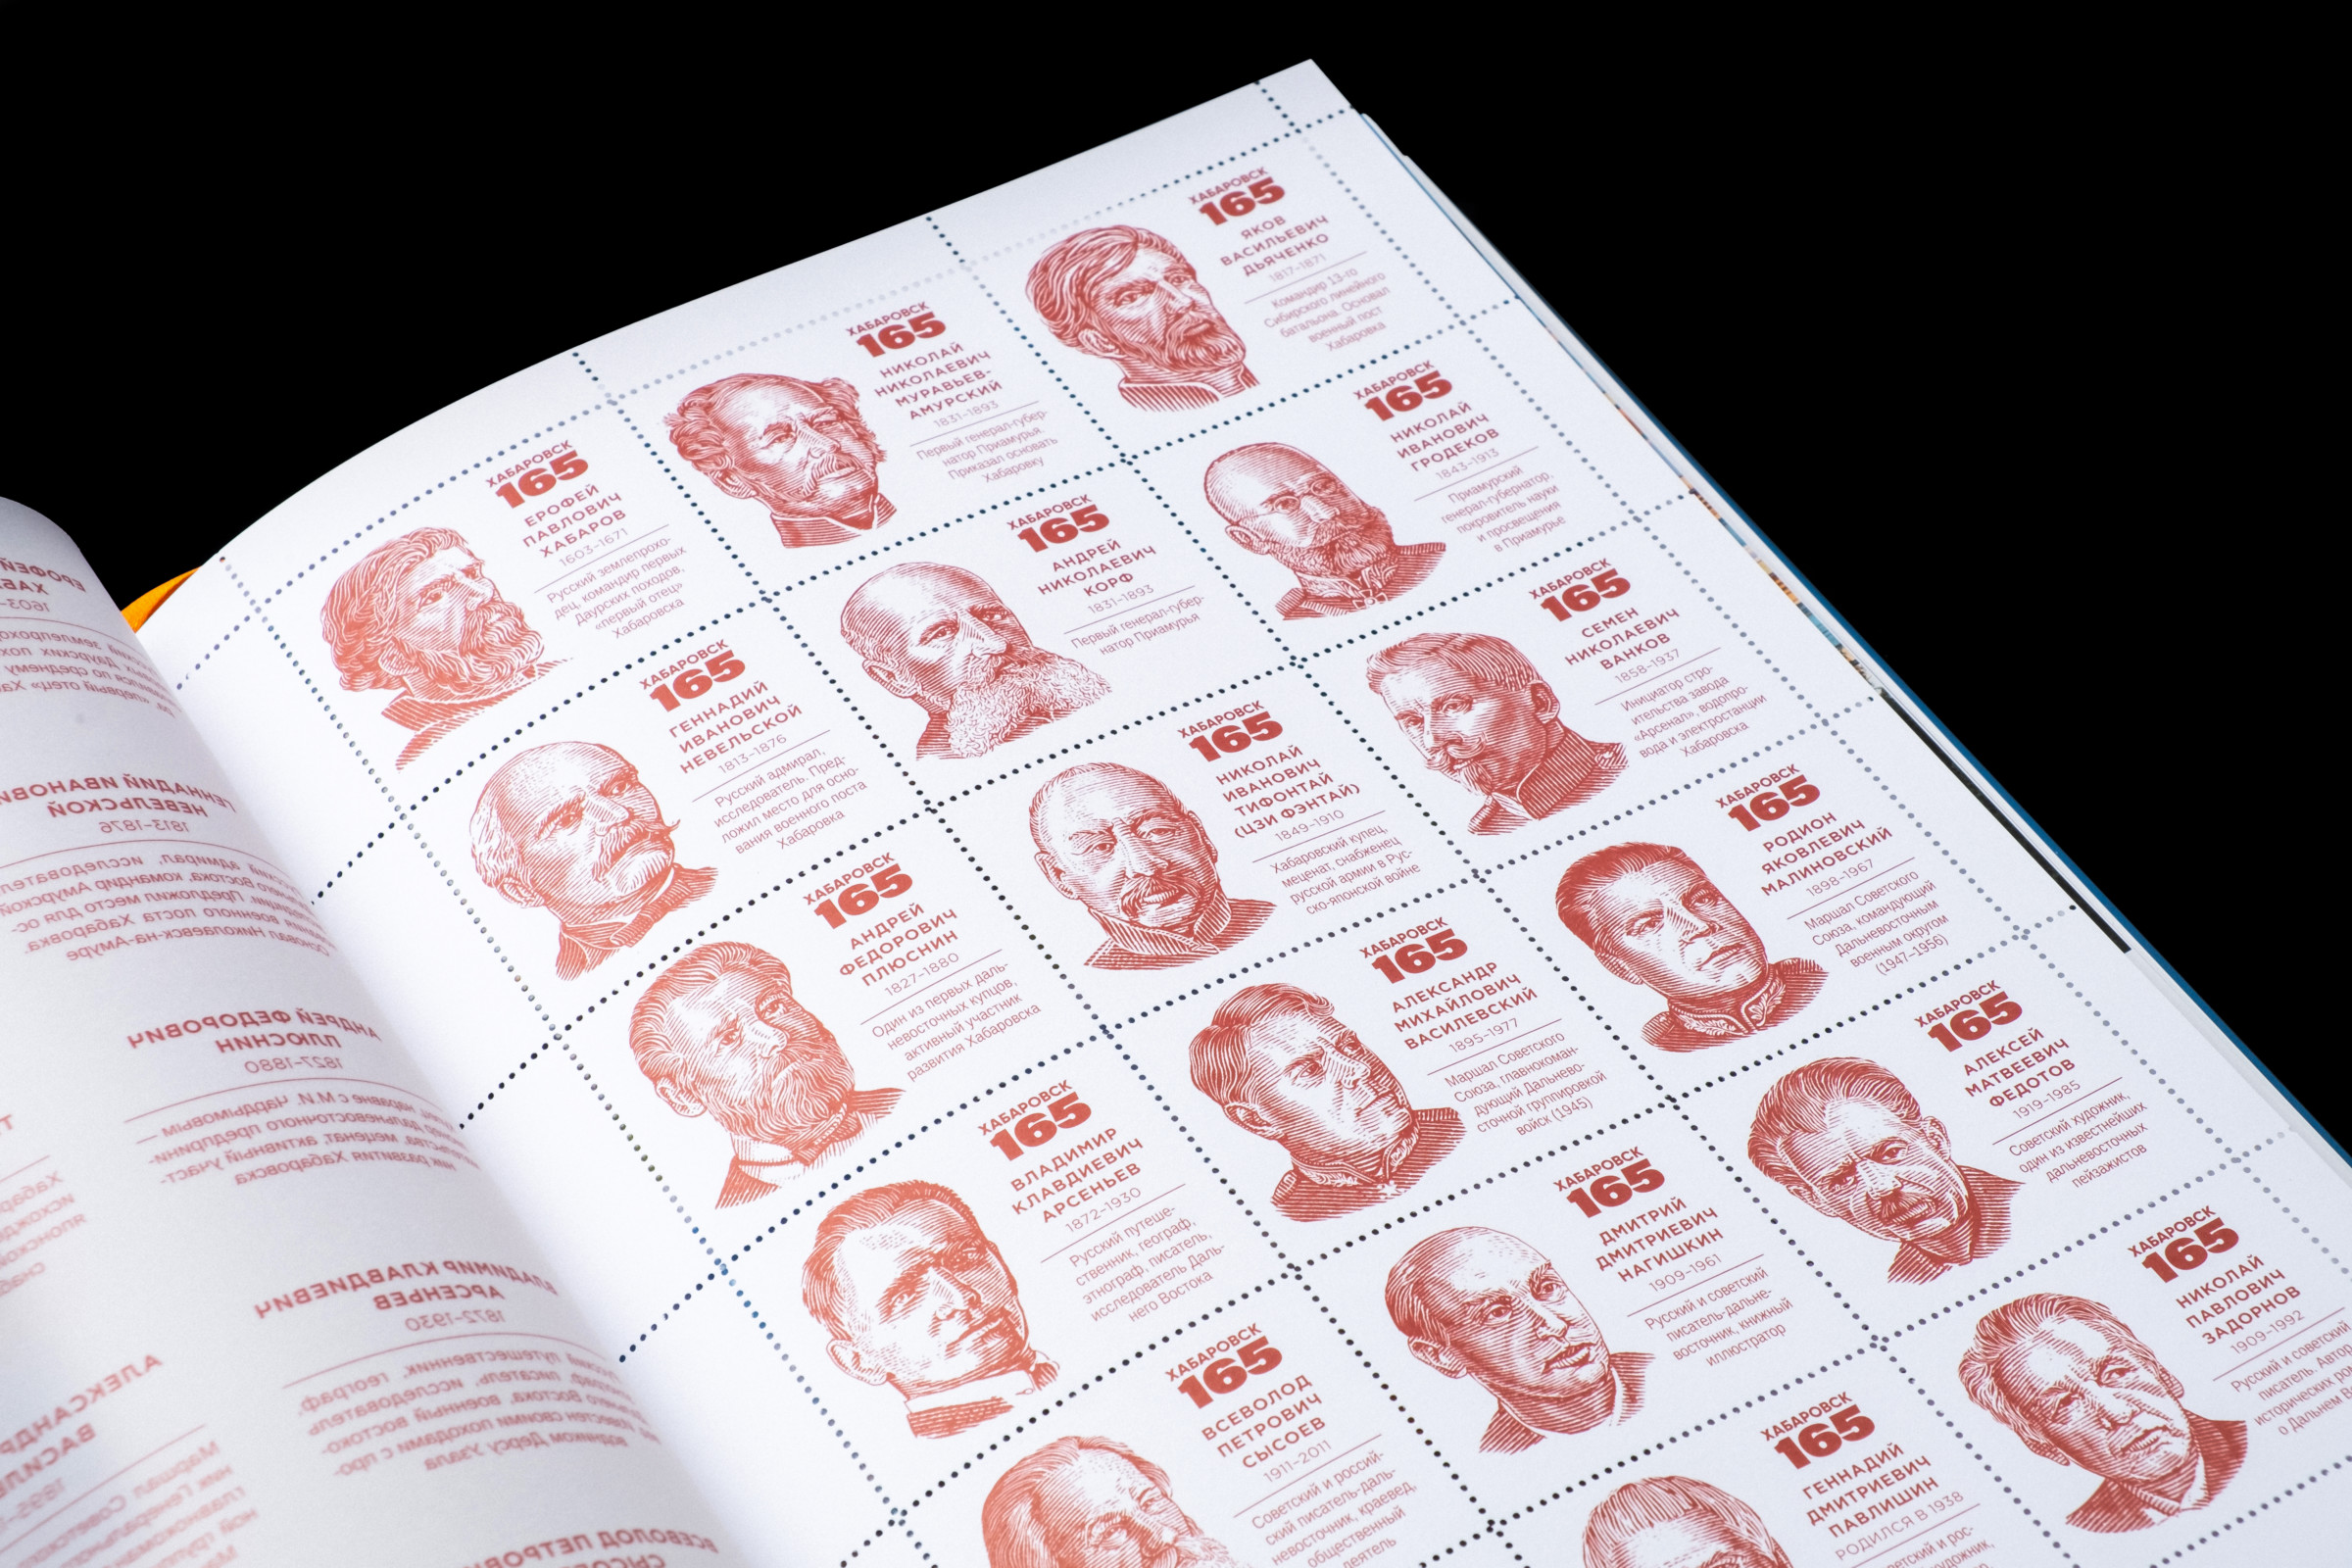 Дизайн книги подразумевает графическое оформление исторического раздела книги в виде почтовых марок. Необычно оформили дизайн станицы в виде марок